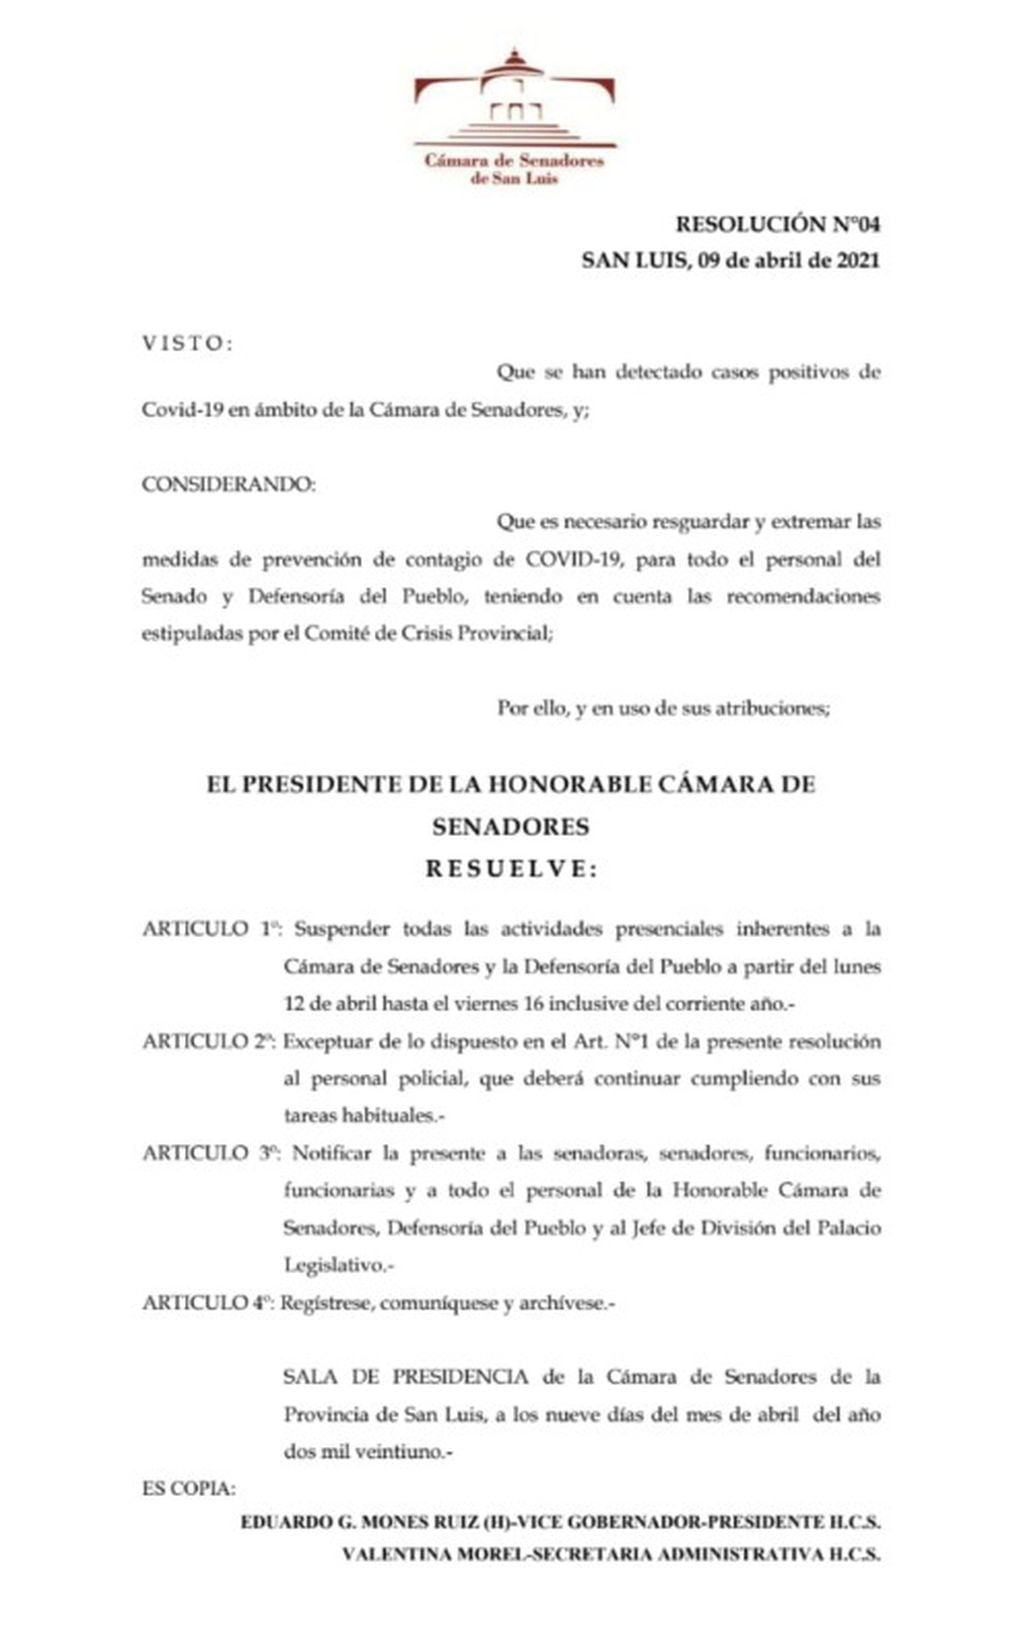 Resolución N°04 de la Cámara de Senadores de San Luis.